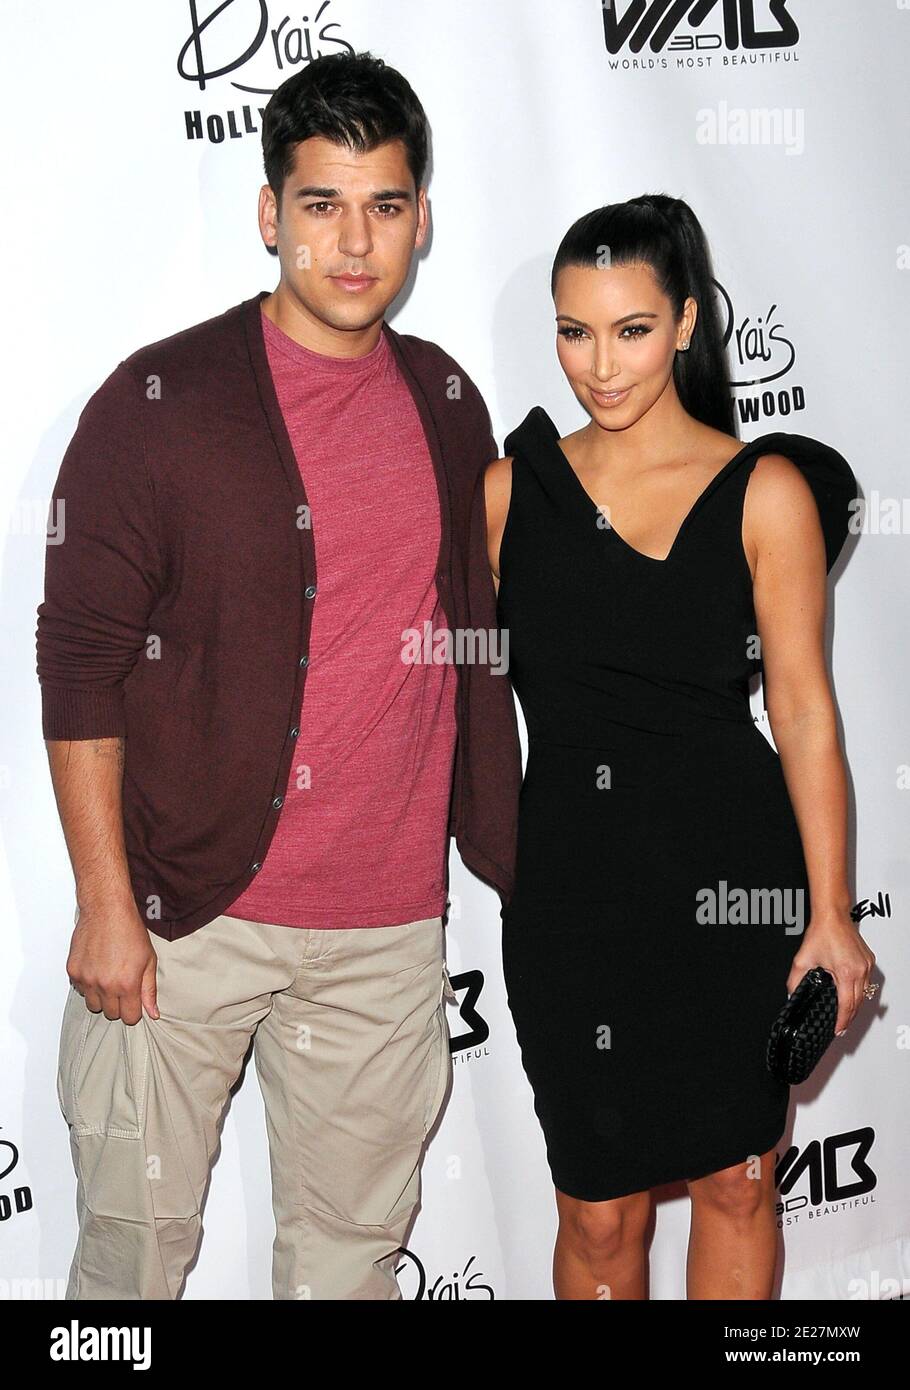 Kim Kardashian et Rob Kardashian assistent à l'événement de lancement du  magazine le plus beau du monde à Dari's Hollywood à Hollywood, Los Angeles,  CA, États-Unis, le 10 août 2011. Photo de